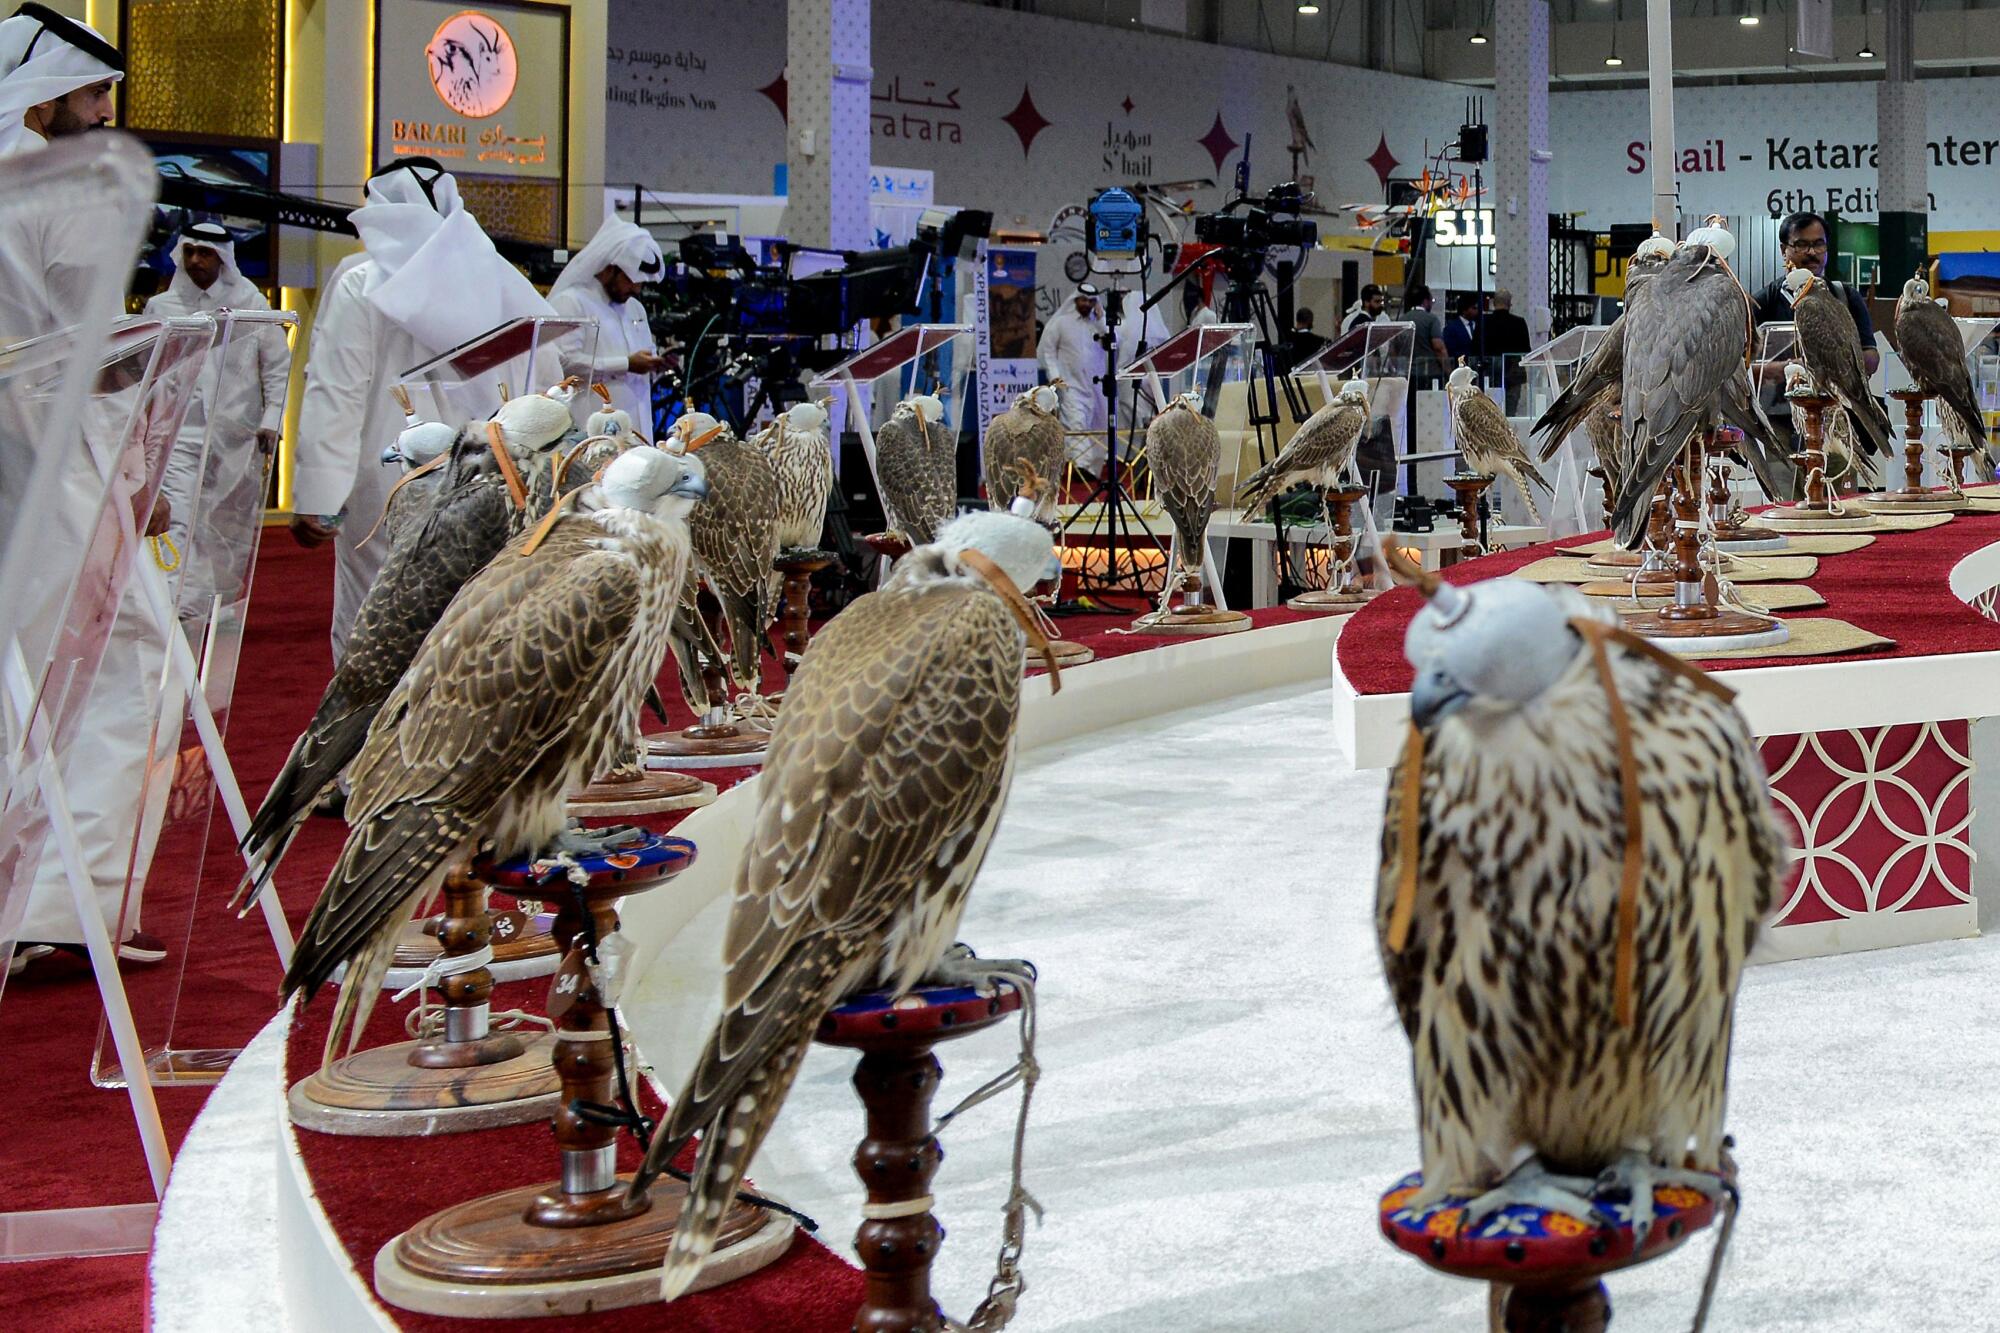 Falcons are presented at the Katara International Hunting and Falcons Exhibition at Katara Cultural Village.